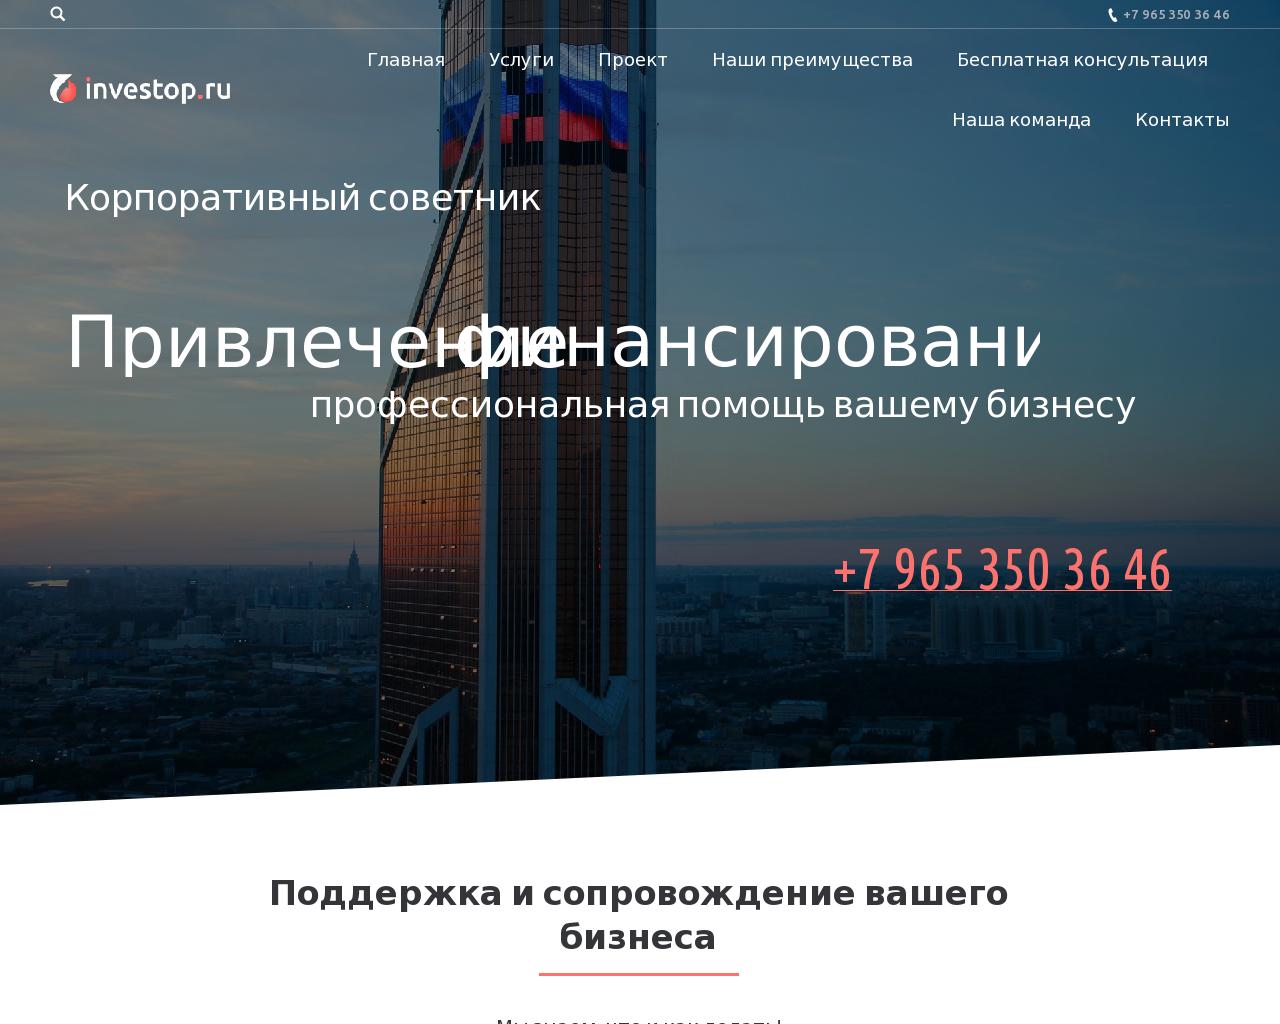 Изображение сайта investop.ru в разрешении 1280x1024